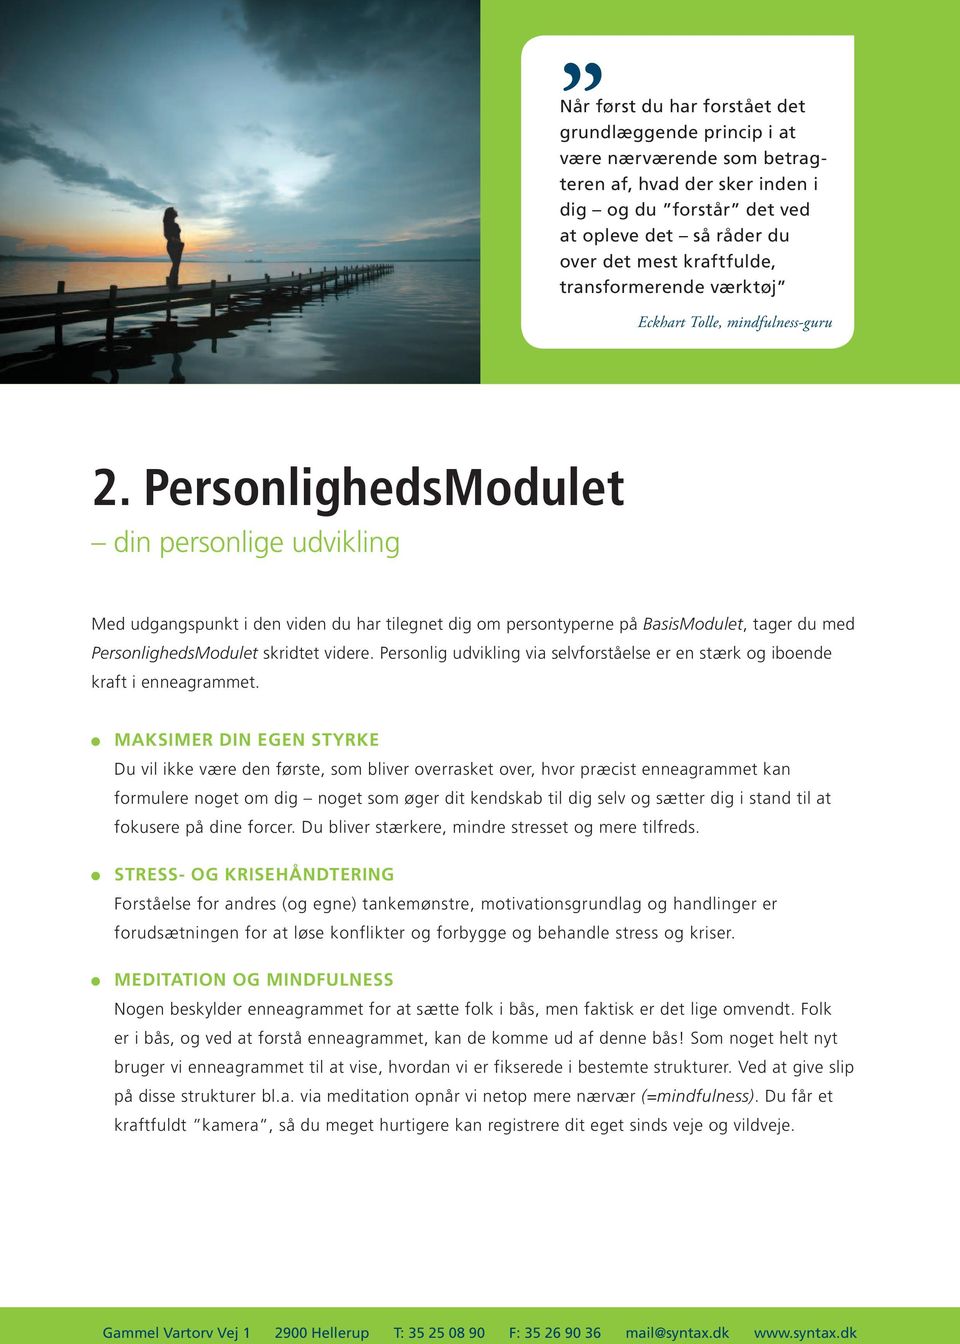 PersonlighedsModulet din personlige udvikling Med udgangspunkt i den viden du har tilegnet dig om persontyperne på BasisModulet, tager du med PersonlighedsModulet skridtet videre.